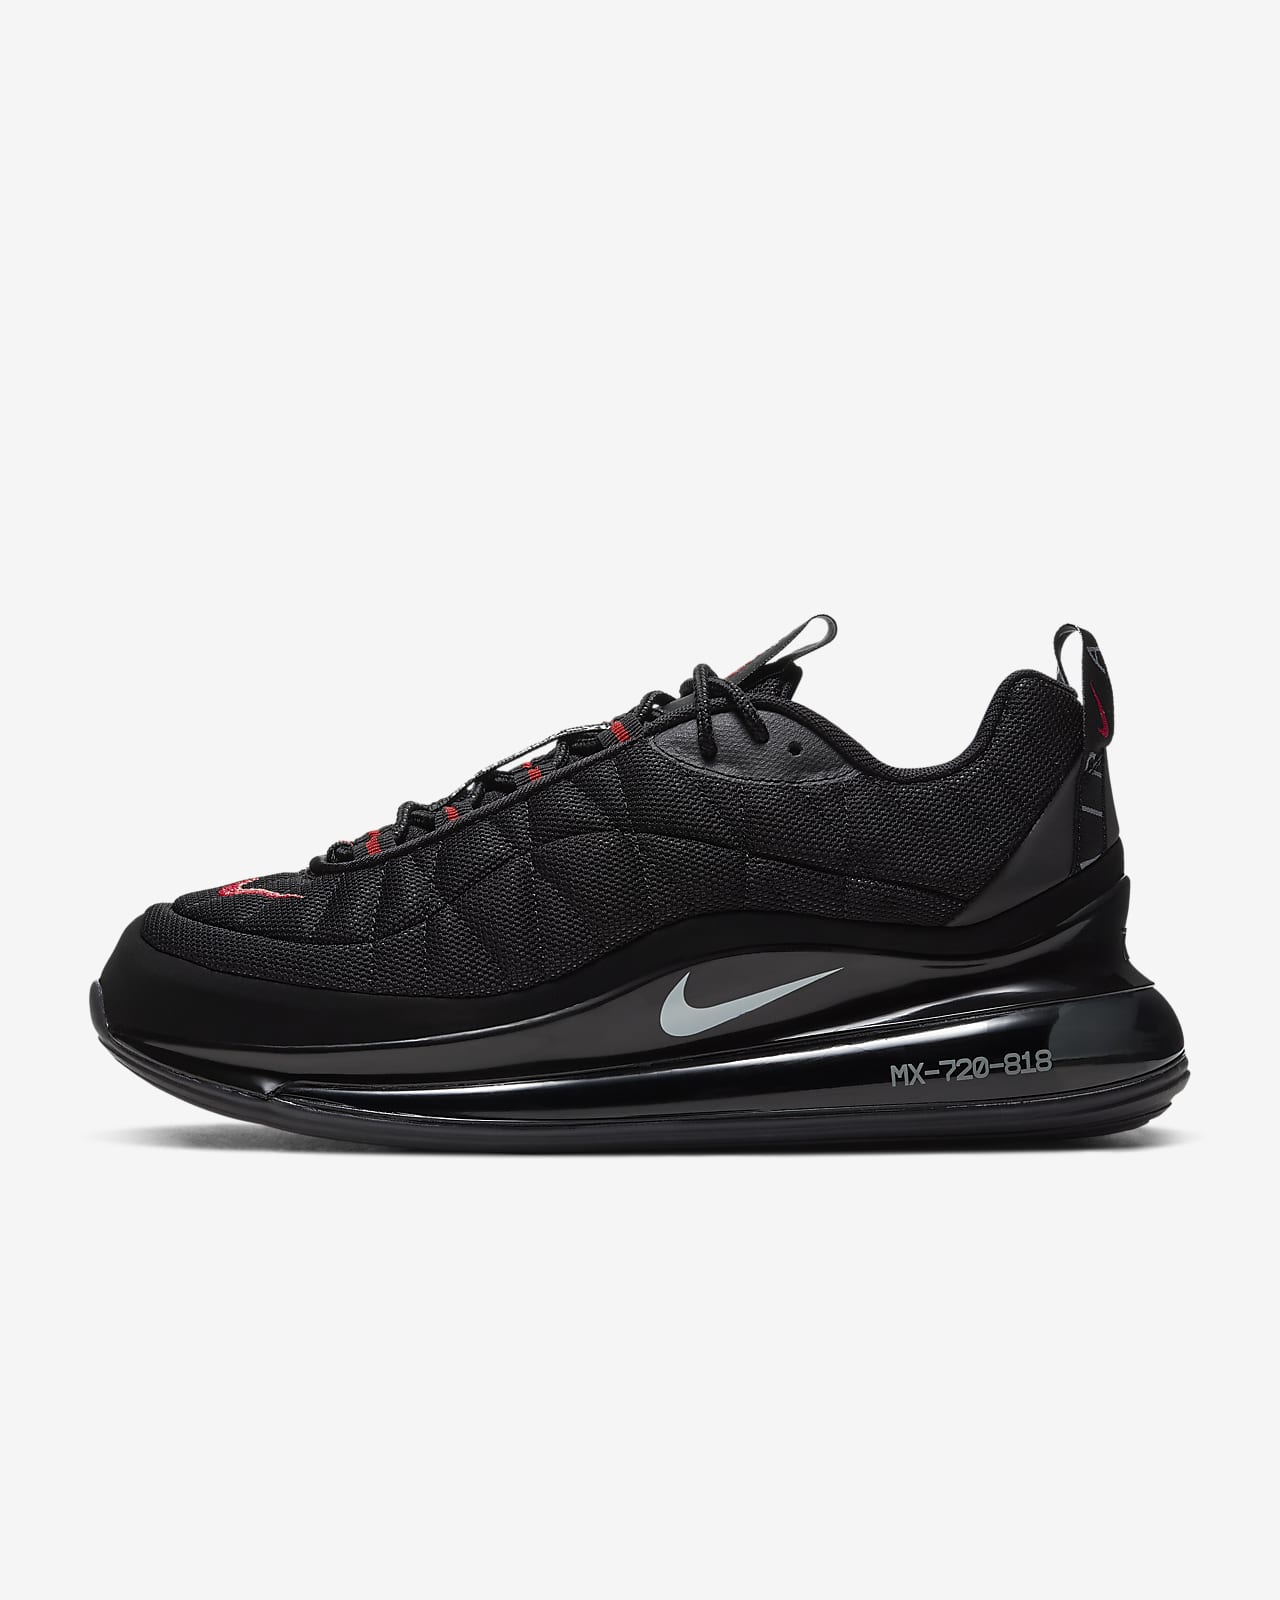 Nike MX-720-818 Men's Shoe. Nike SG